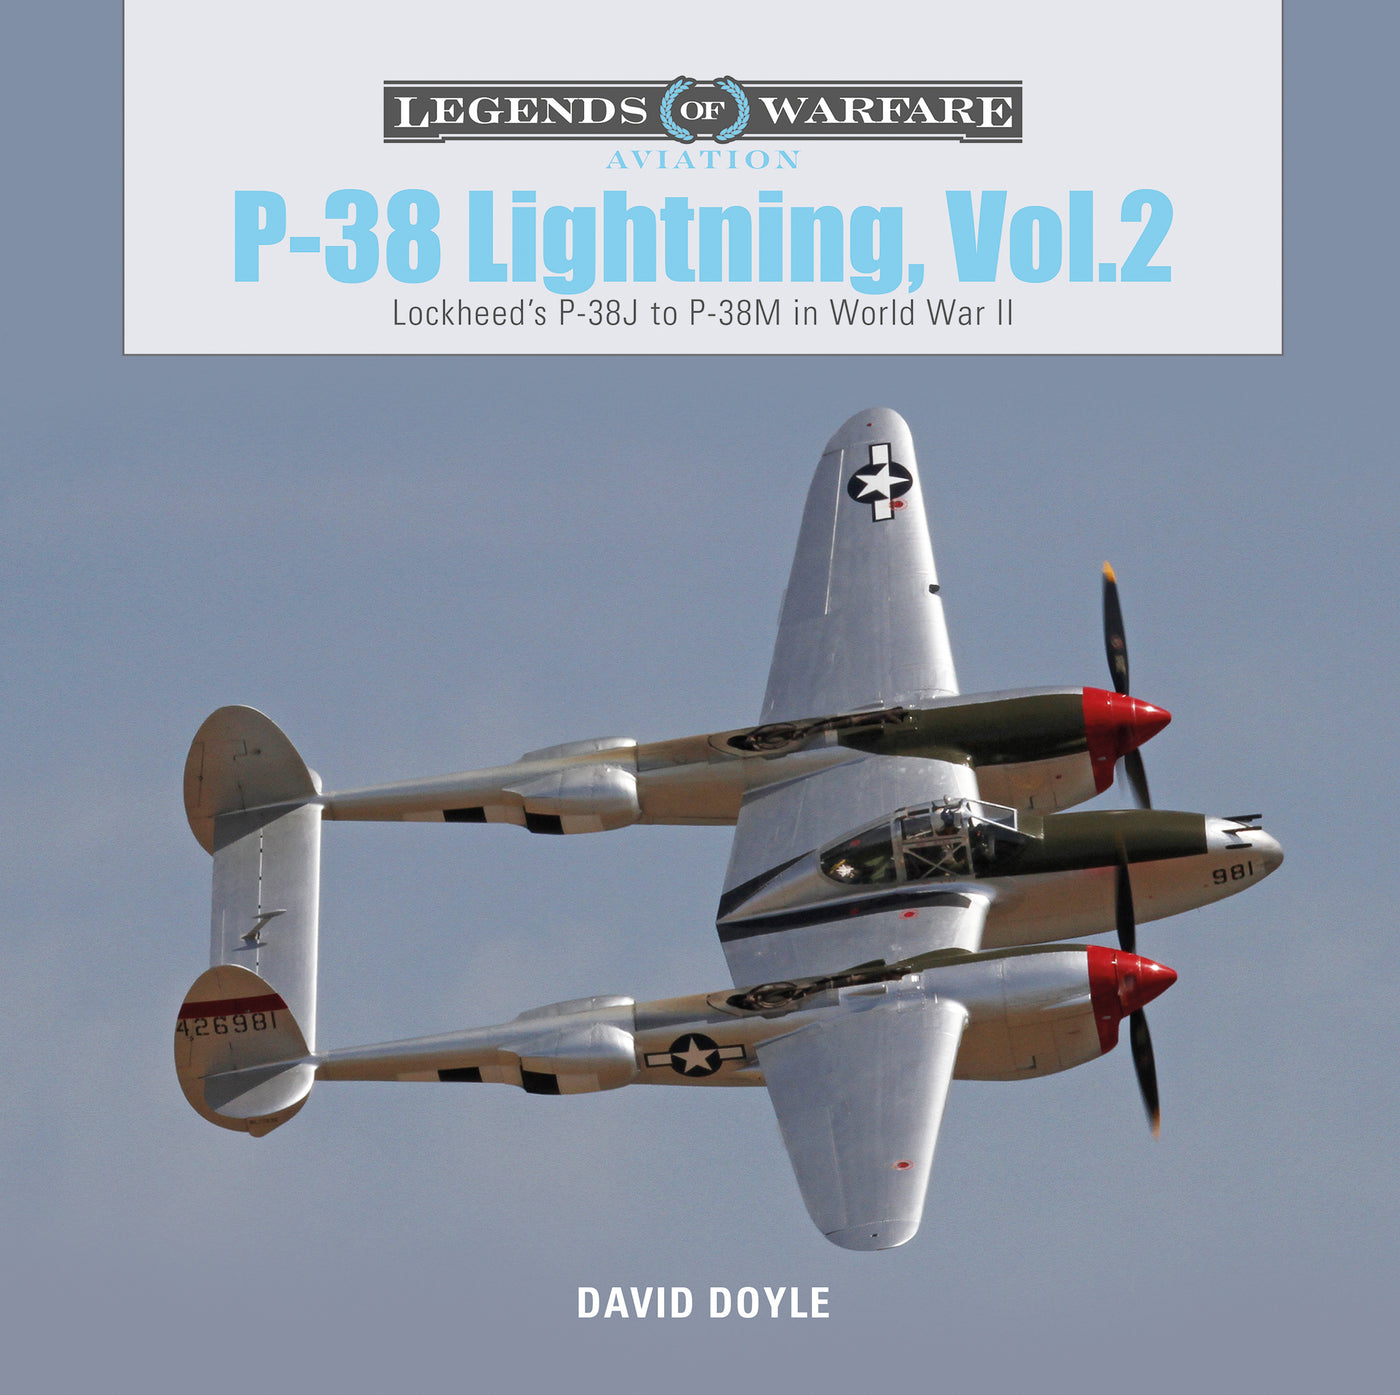 P-38 Lightning Vol. 2